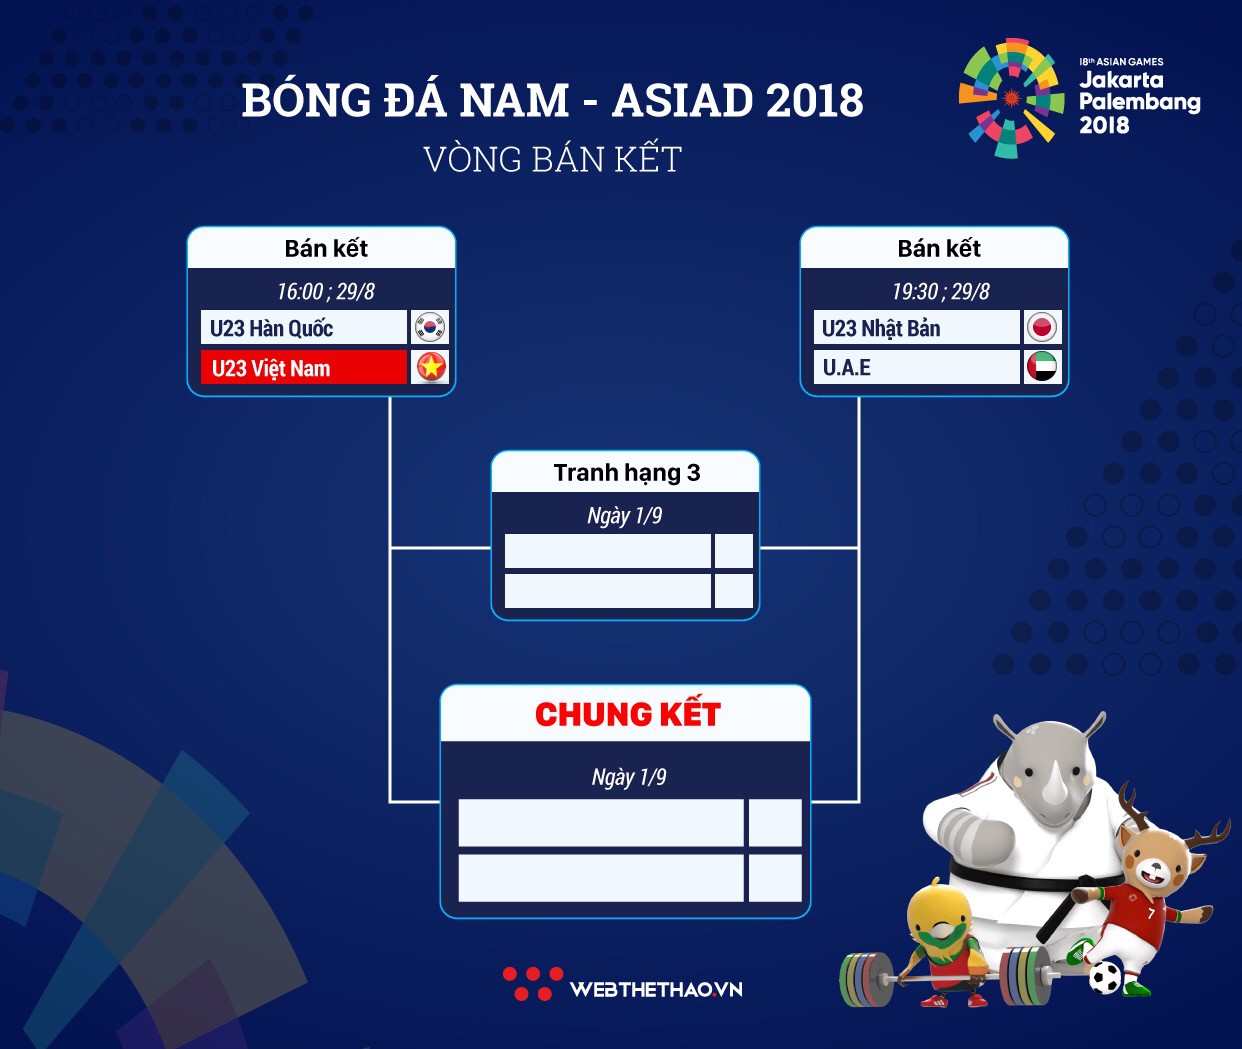 Lịch thi đấu vòng bán kết bóng đá nam ASIAD 2018 - Ảnh 3.